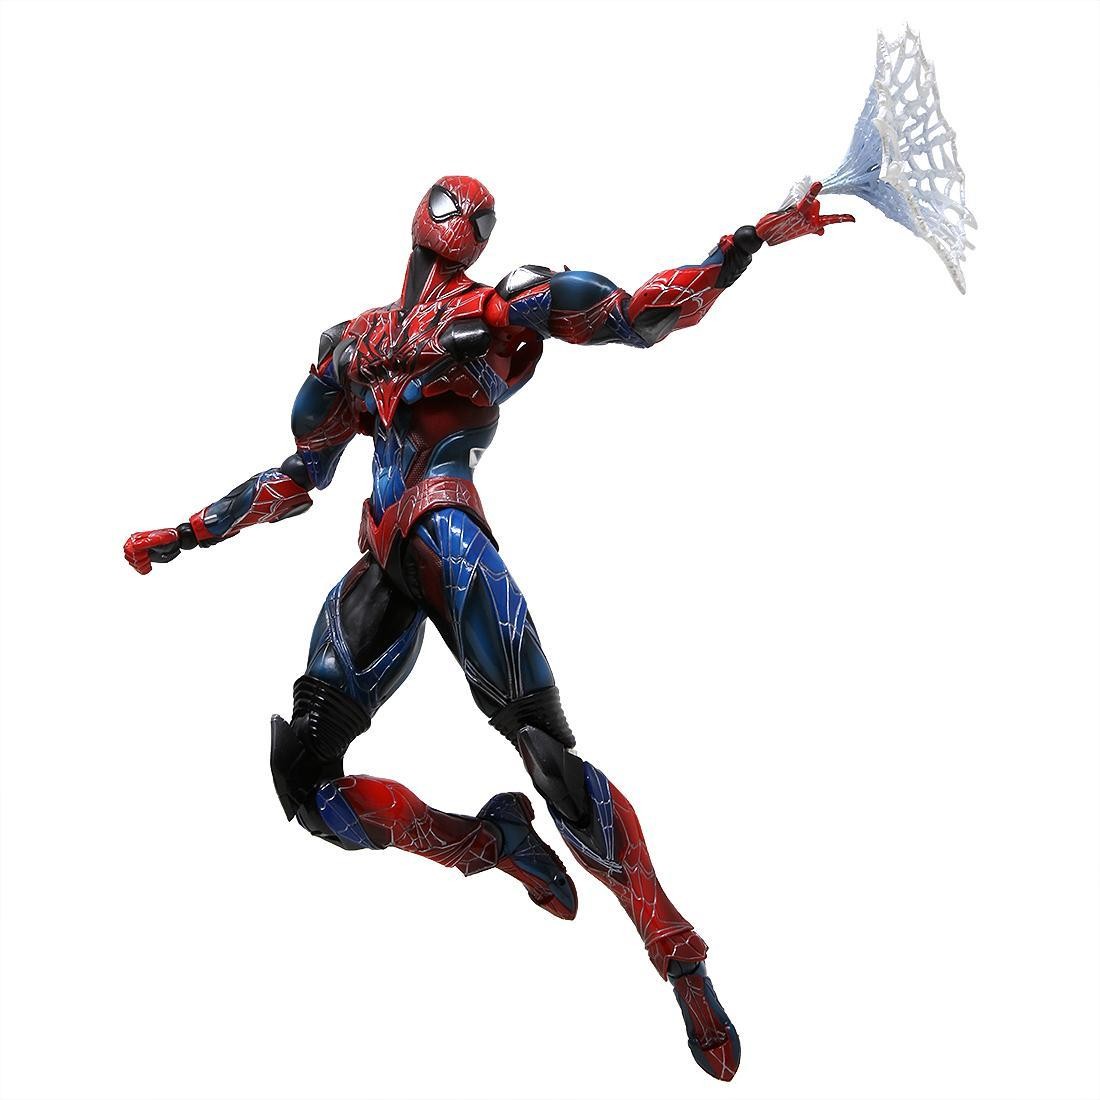 spiderman action figures